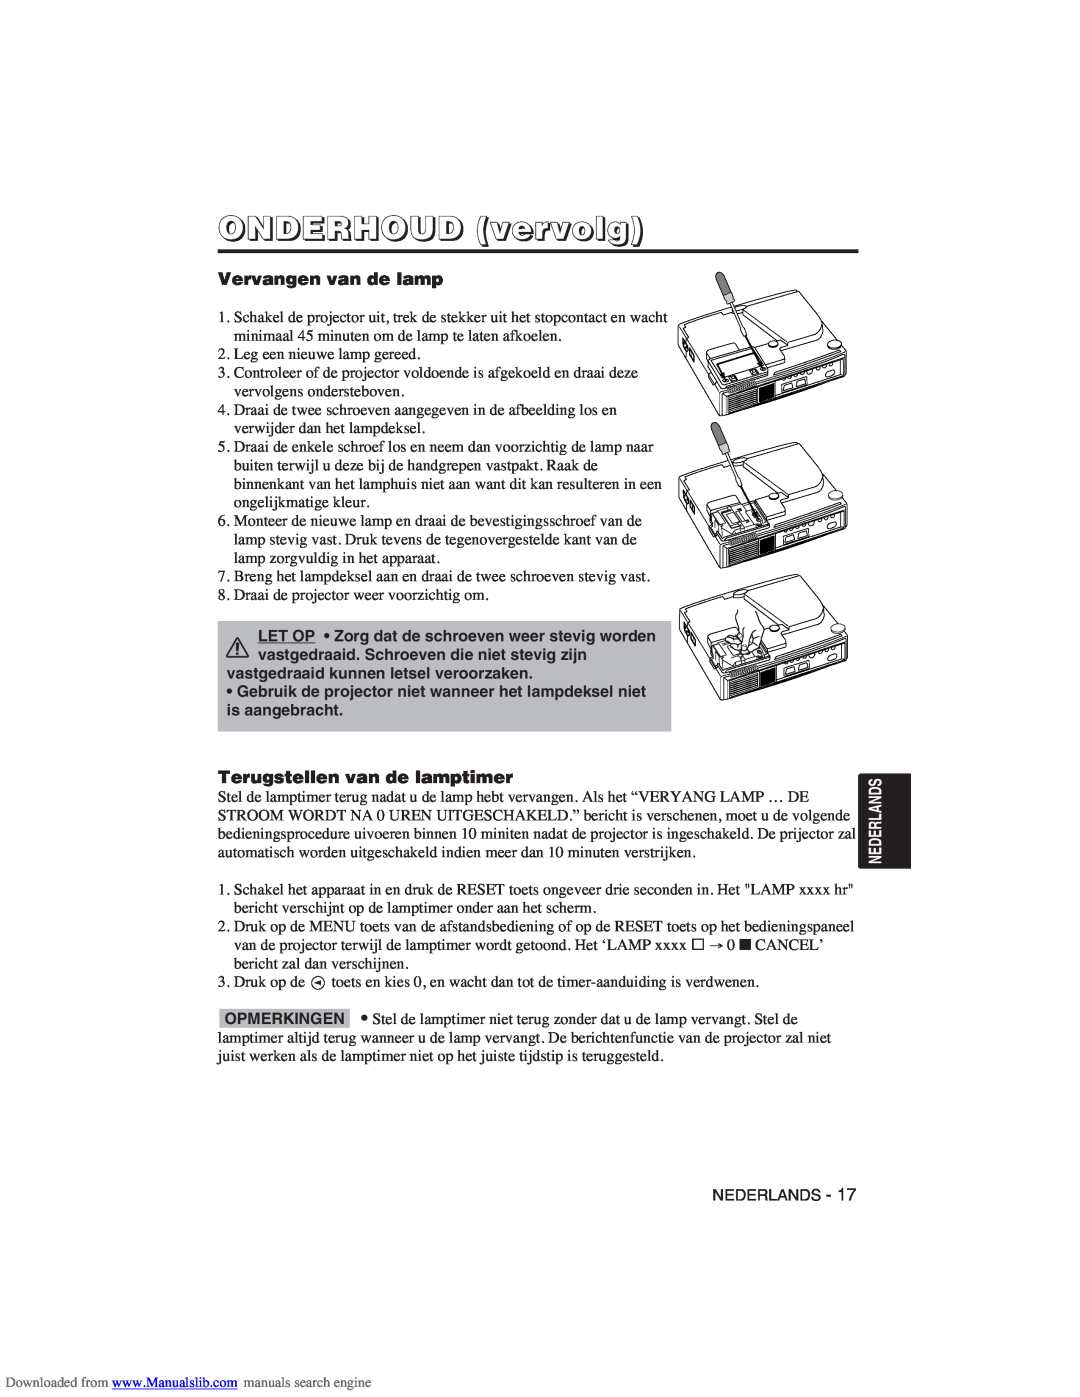 Hitachi CP-X275W user manual ONDERHOUD vervolg, Vervangen van de lamp, Terugstellen van de lamptimer 